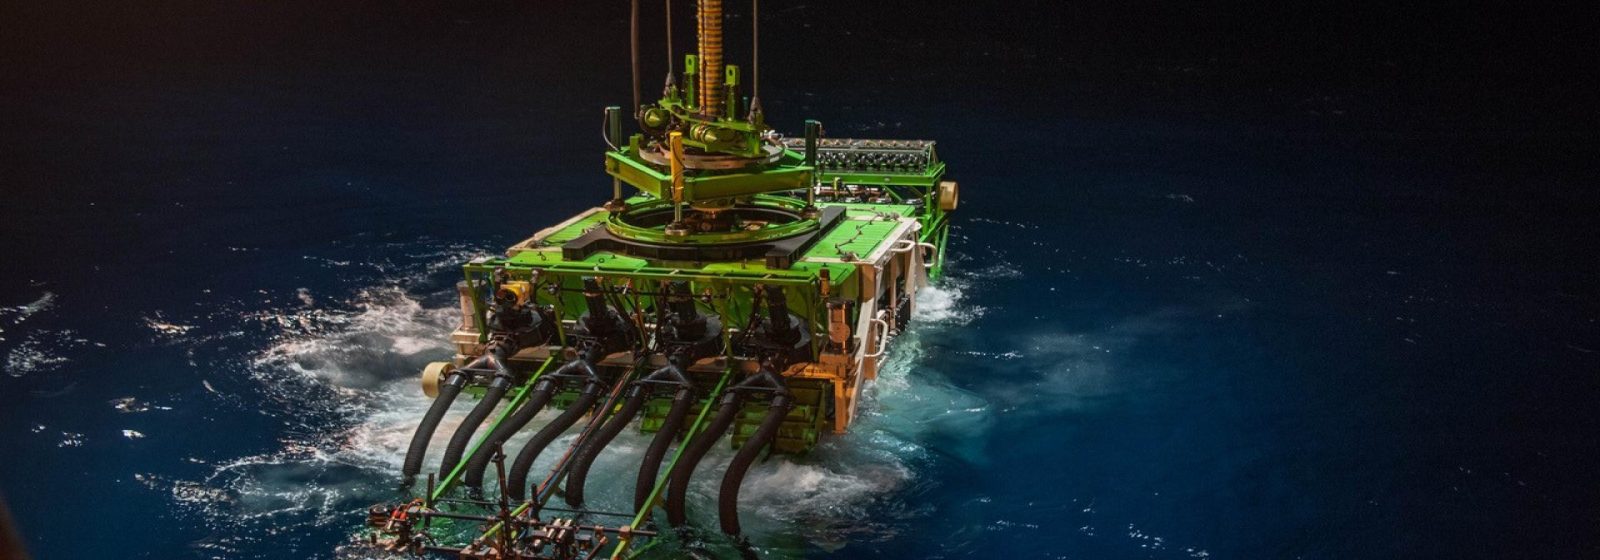 Diepzeerobot Patania van DEME verzamelt grondstoffen op de oceaanbodem